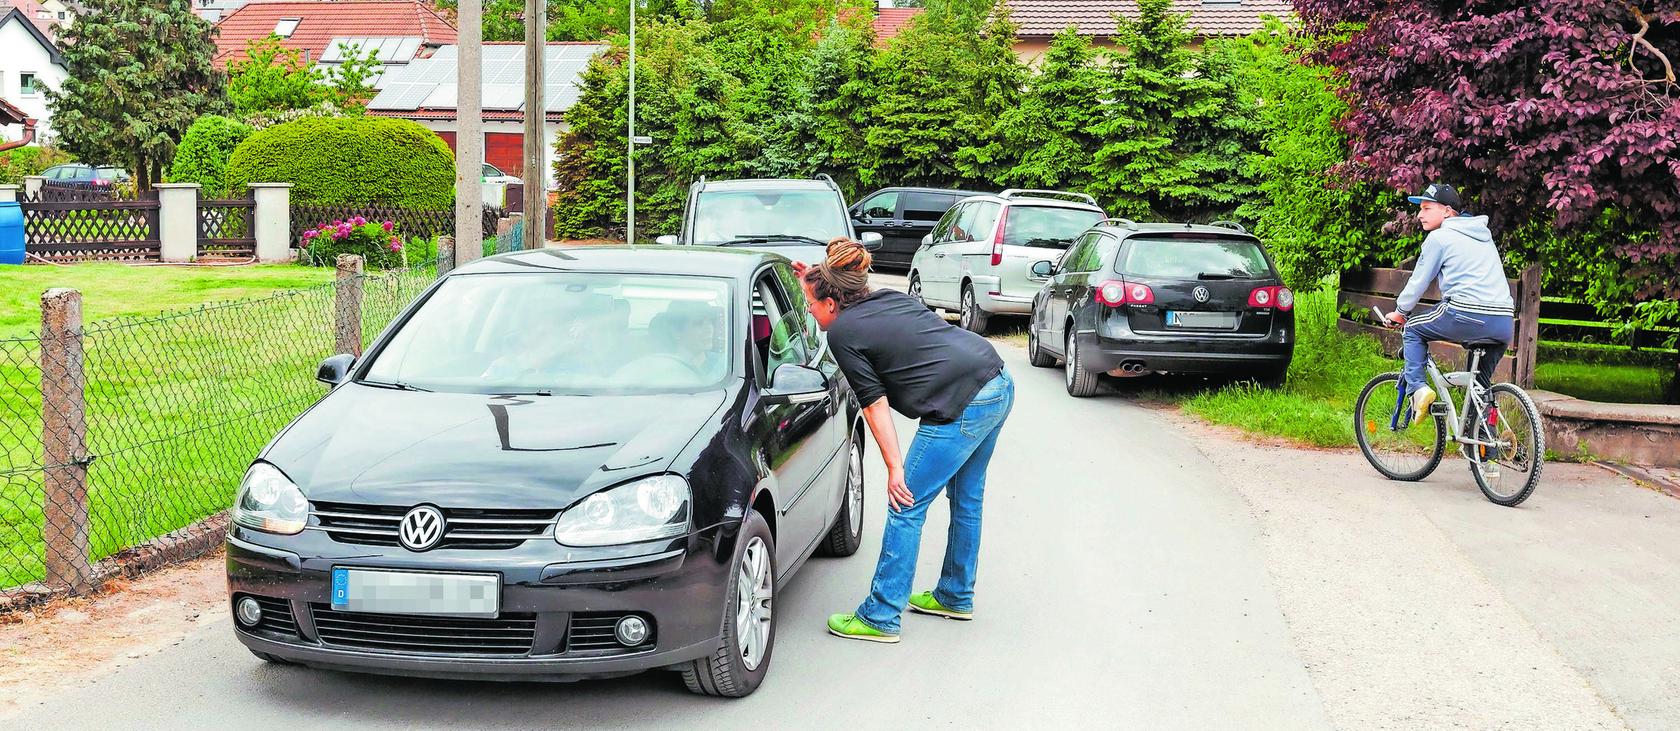 Lindenhof: Parkplatznot bei Hochbetrieb